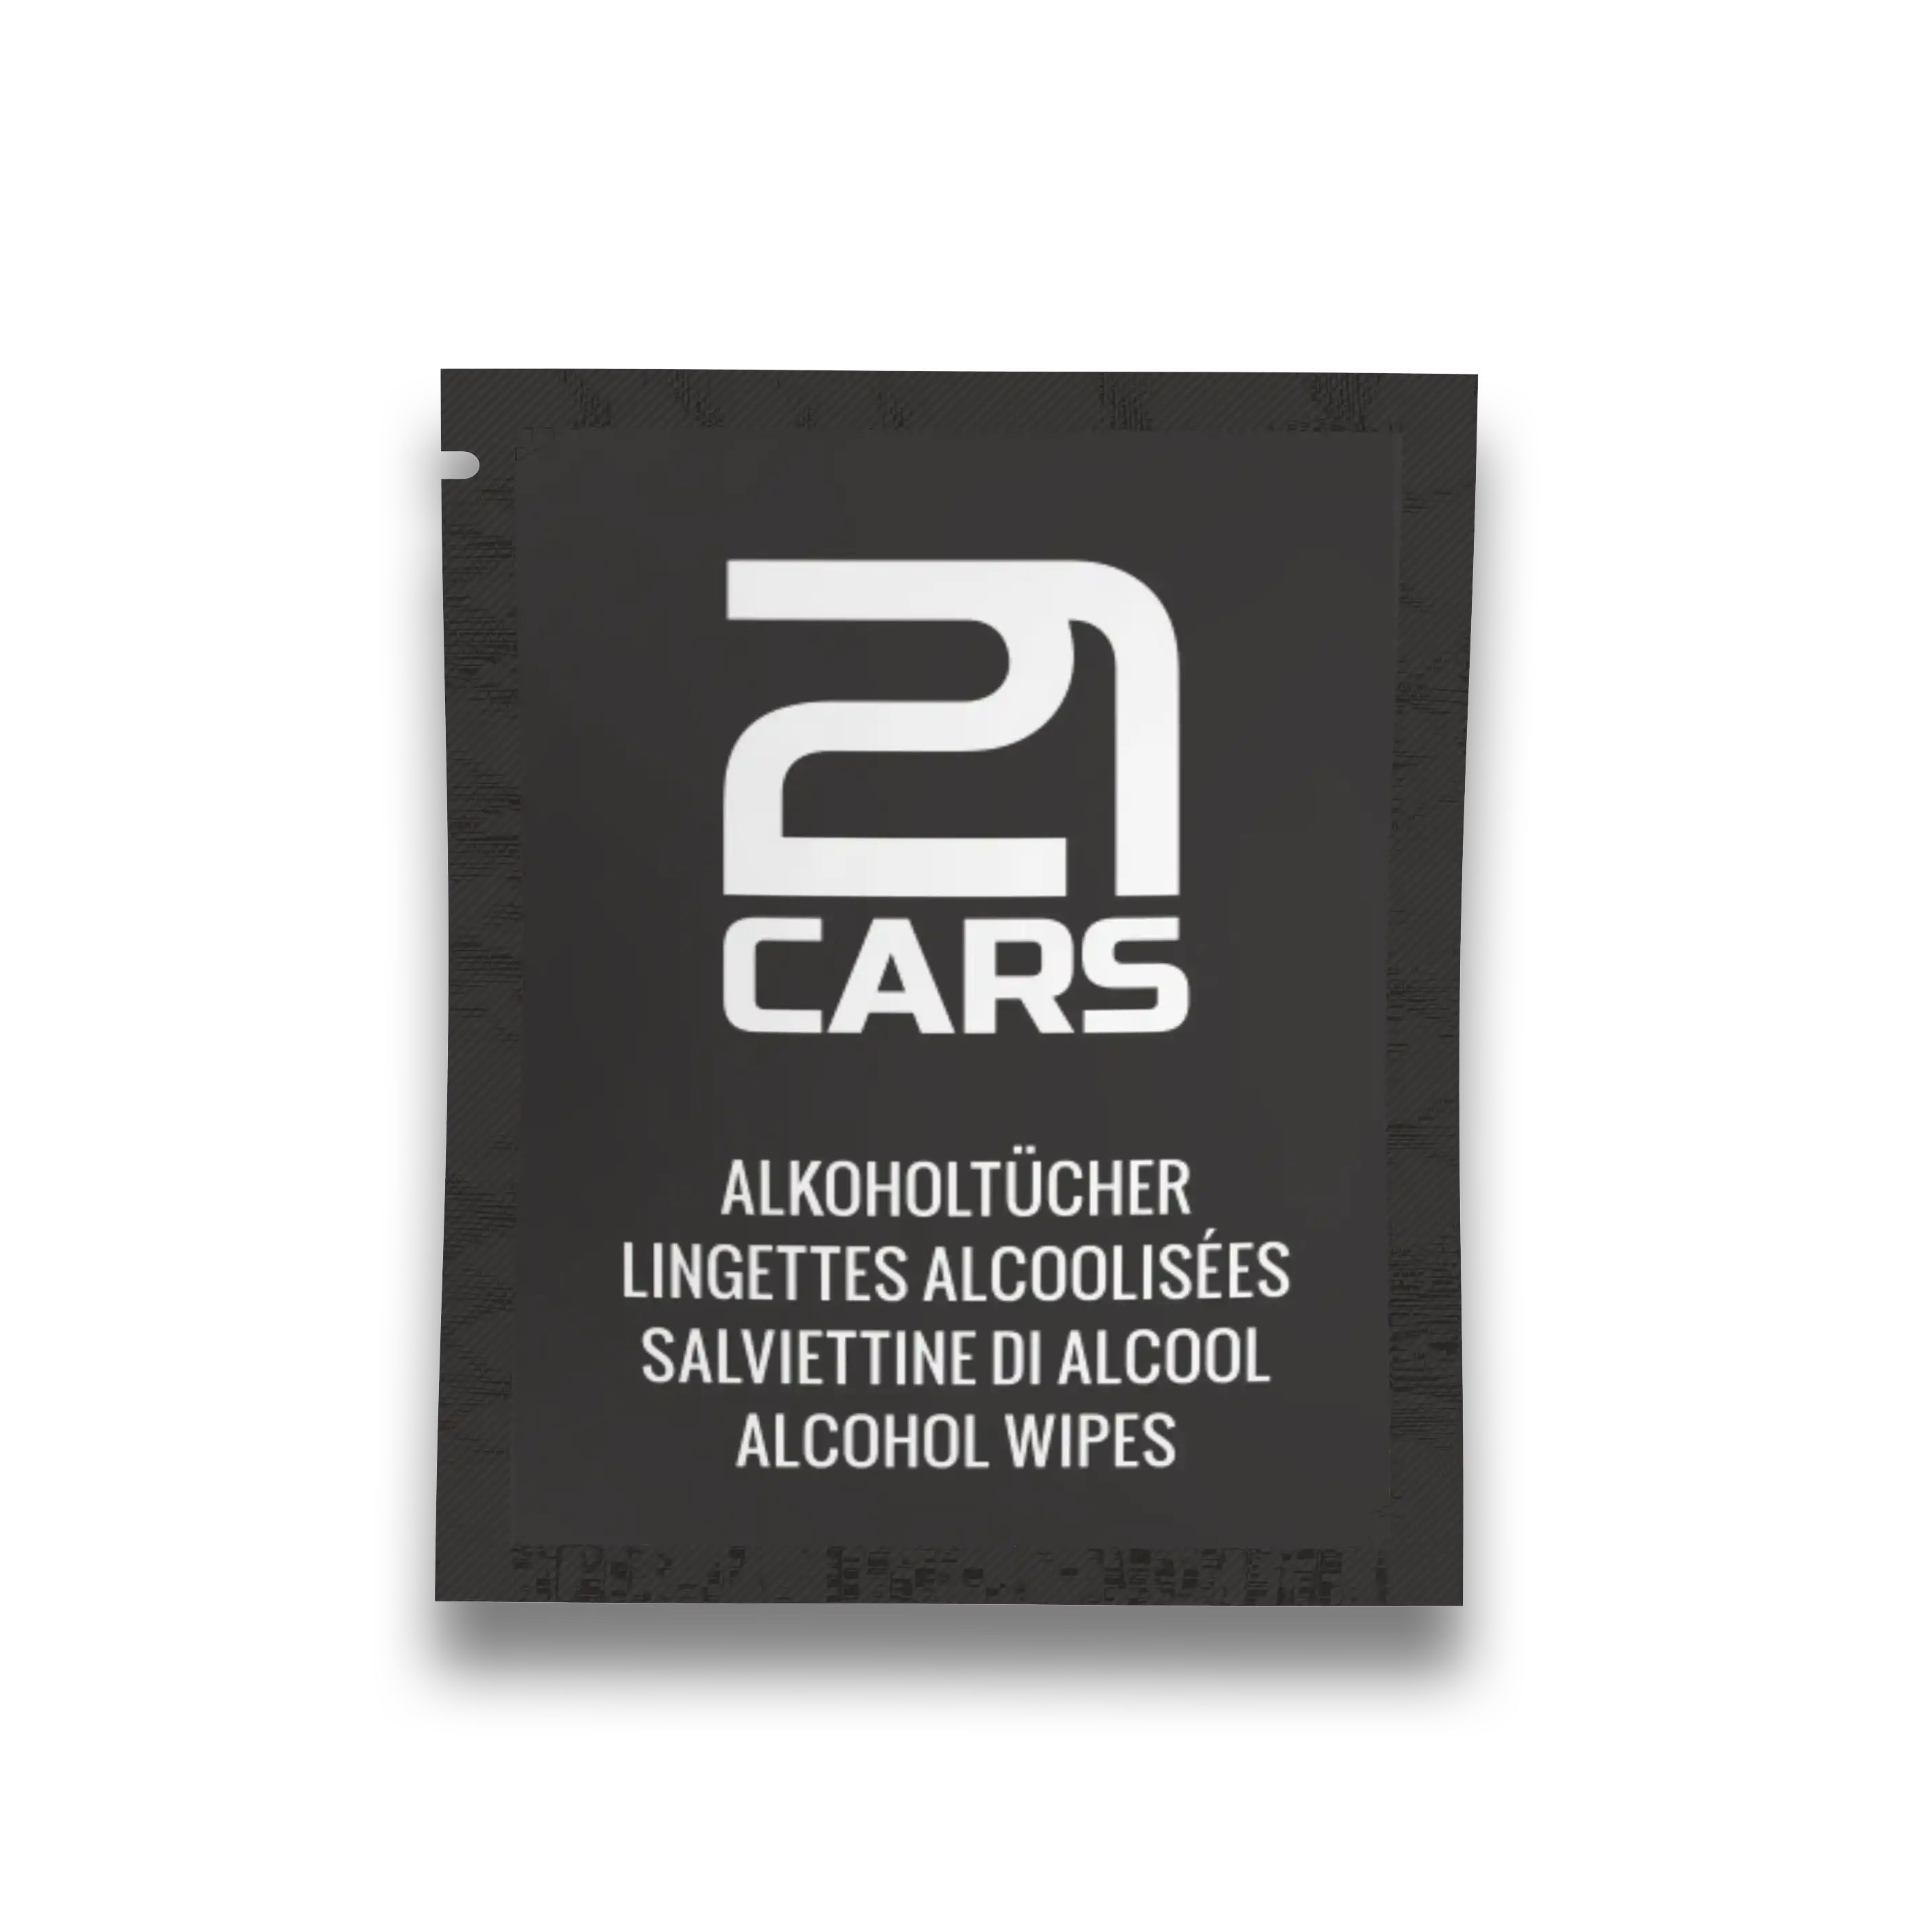 21CARS Twenty One Cars Klett Kennzeichenhalter Nummerschildhalter Ersatzteil einzeln Carbon Karte Carbon Card